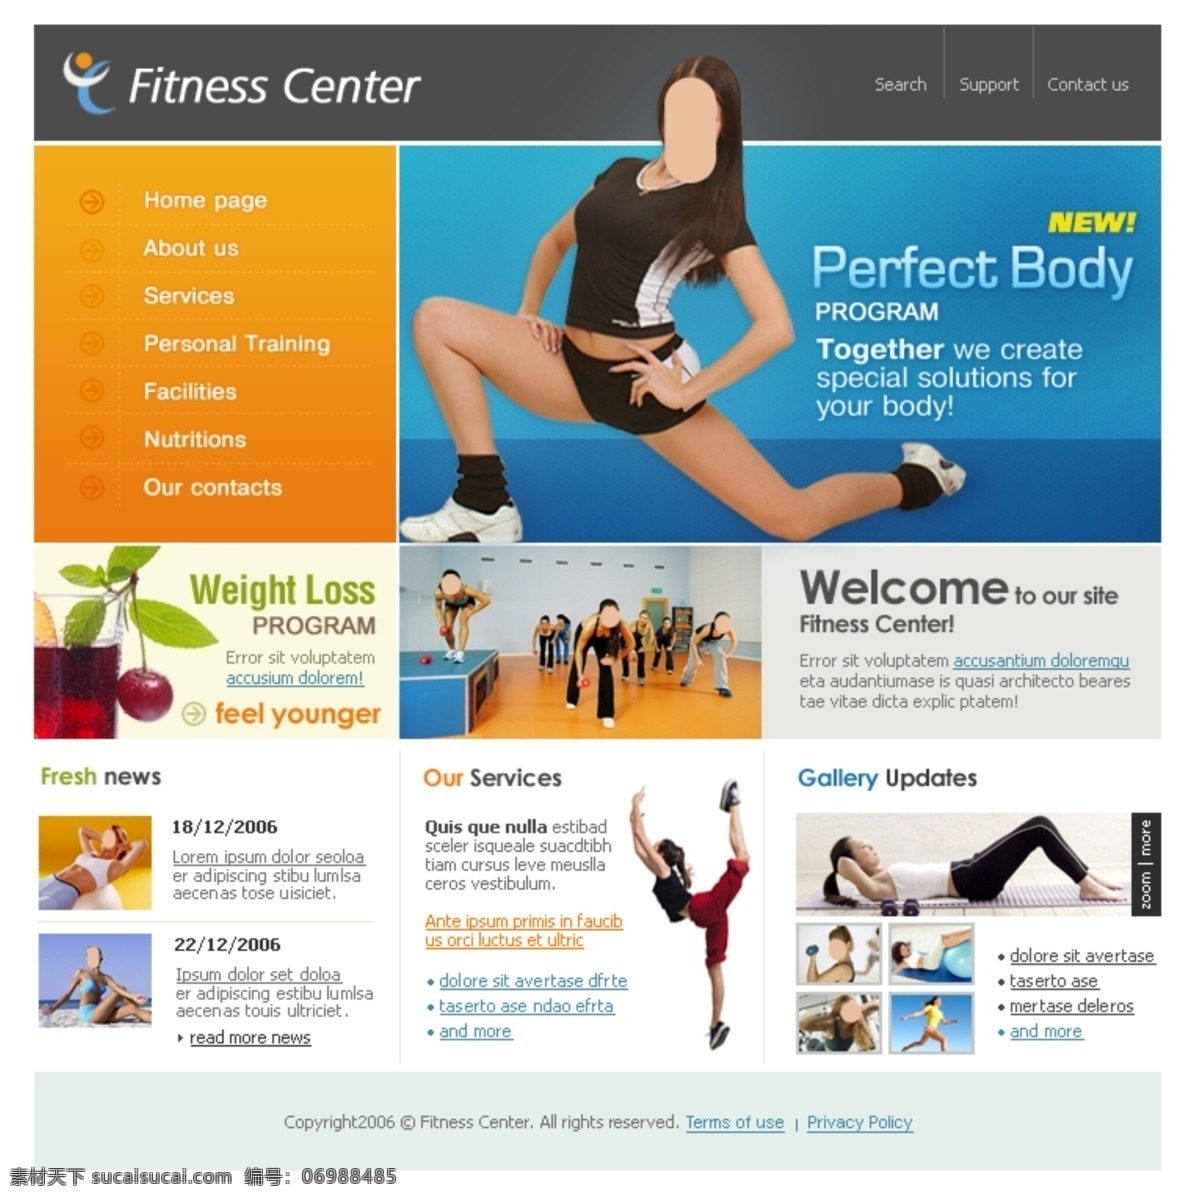 女性 健身 美体 网站 国外网站 设计素材 设计网站模板 网页模板 英文模板 公司类模板 web 界面设计 网页素材 其他网页素材